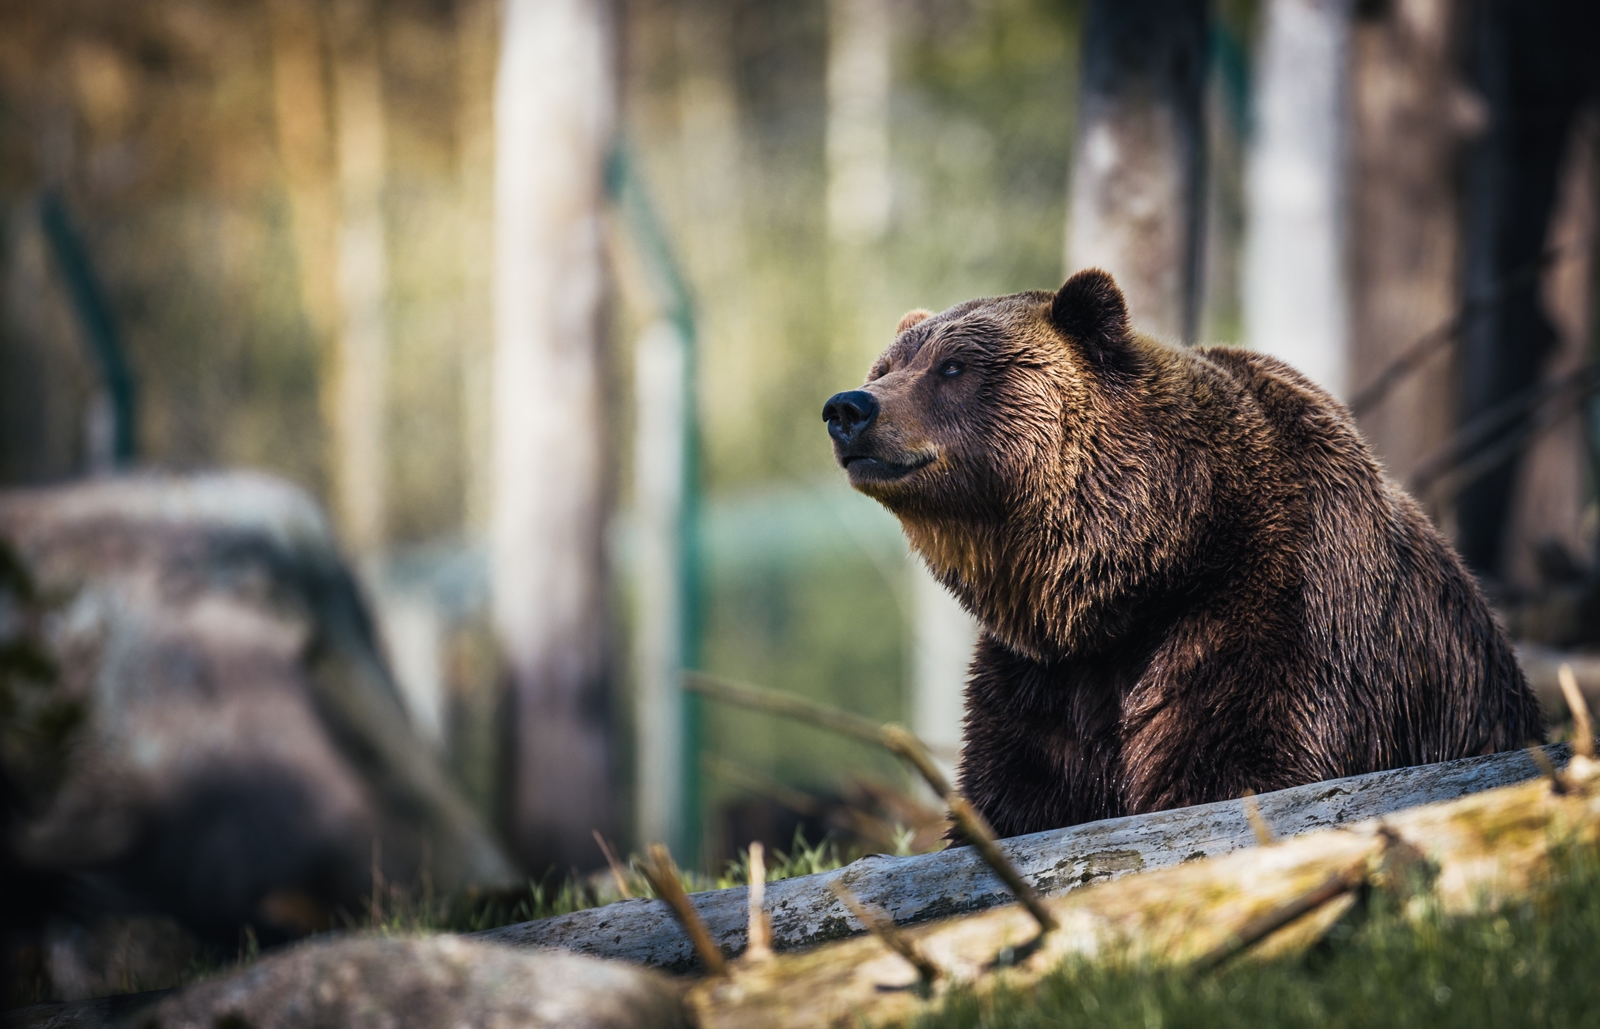 Καναδάς: Αρκούδα γκρίζλι επιτέθηκε και σκότωσε δύο περιπατητές στην Αλμπέρτα